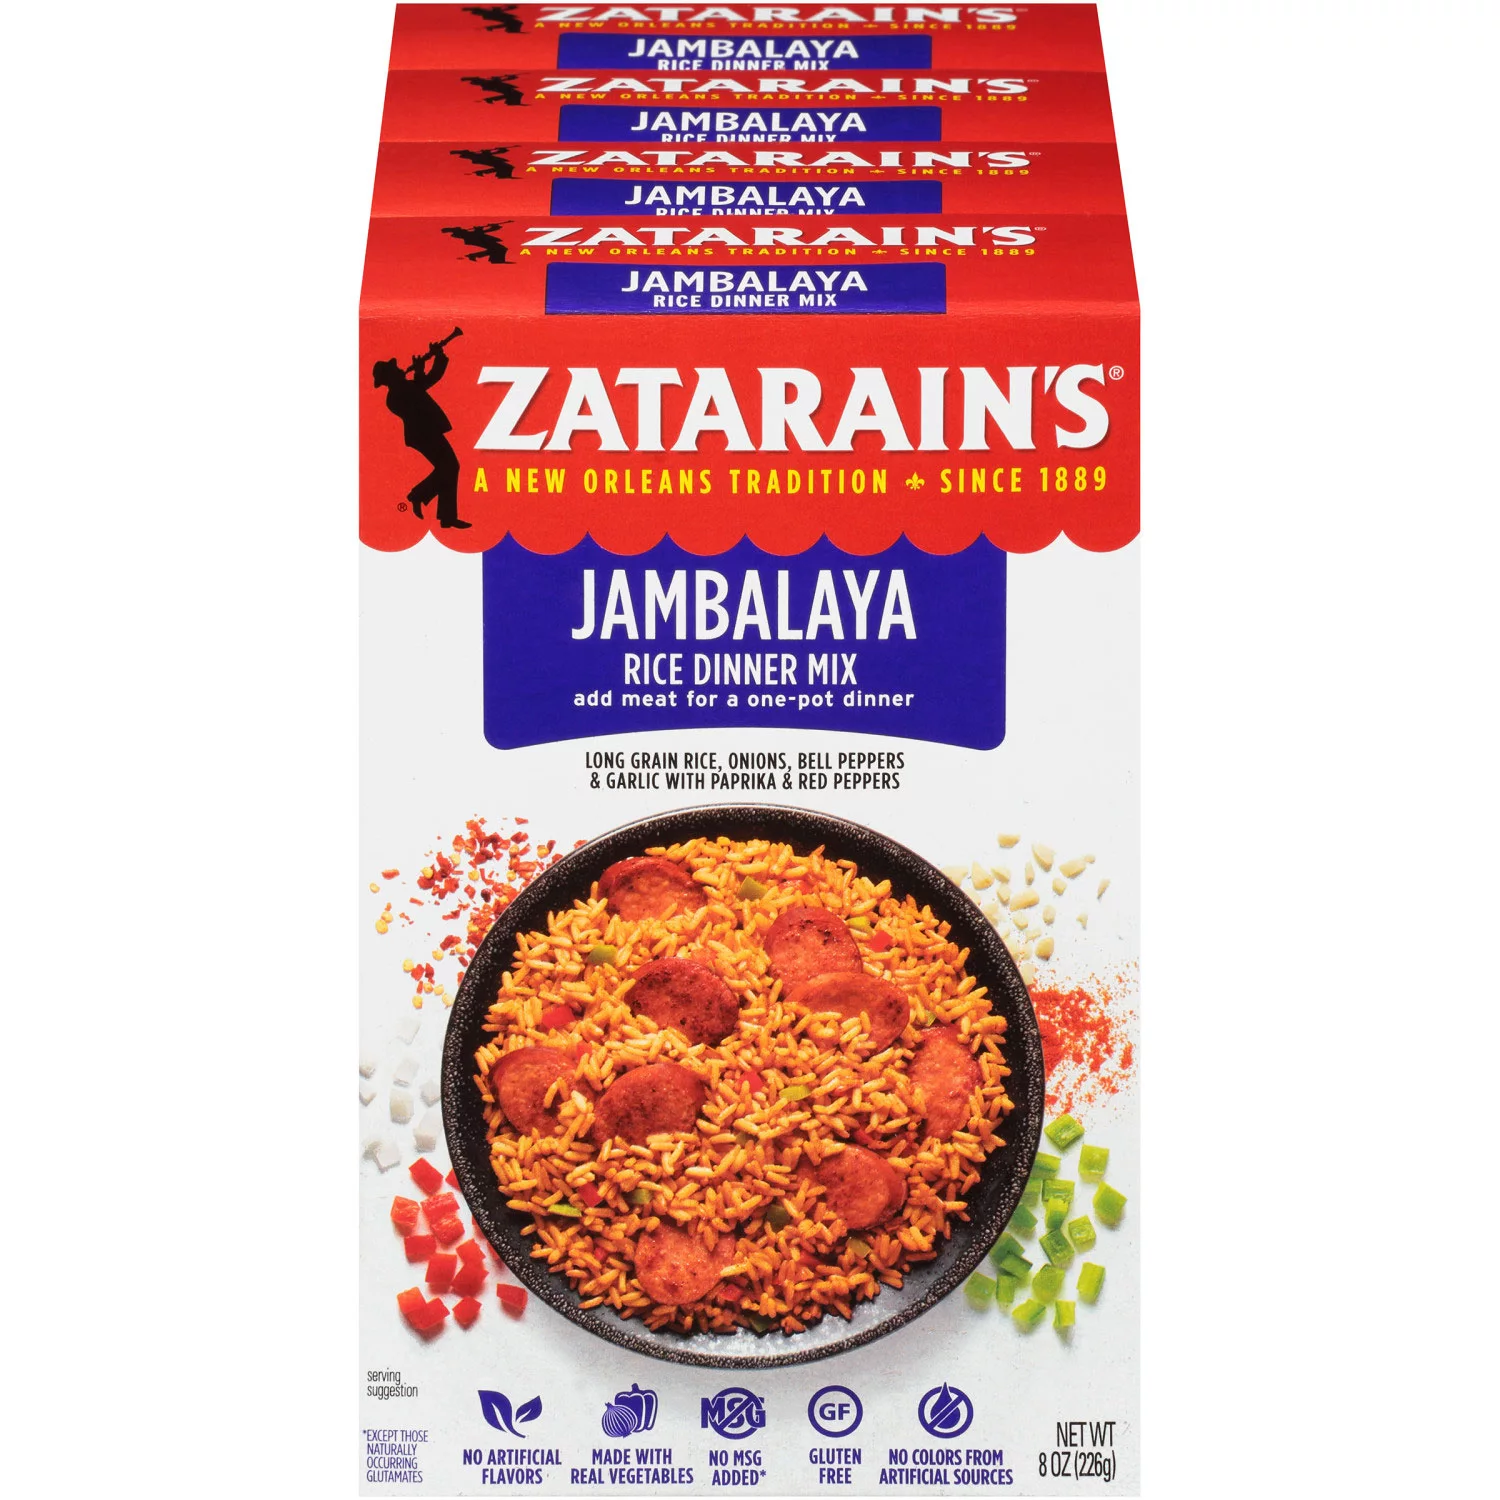 Zatarain's Jambalaya Rice Dinner Mix